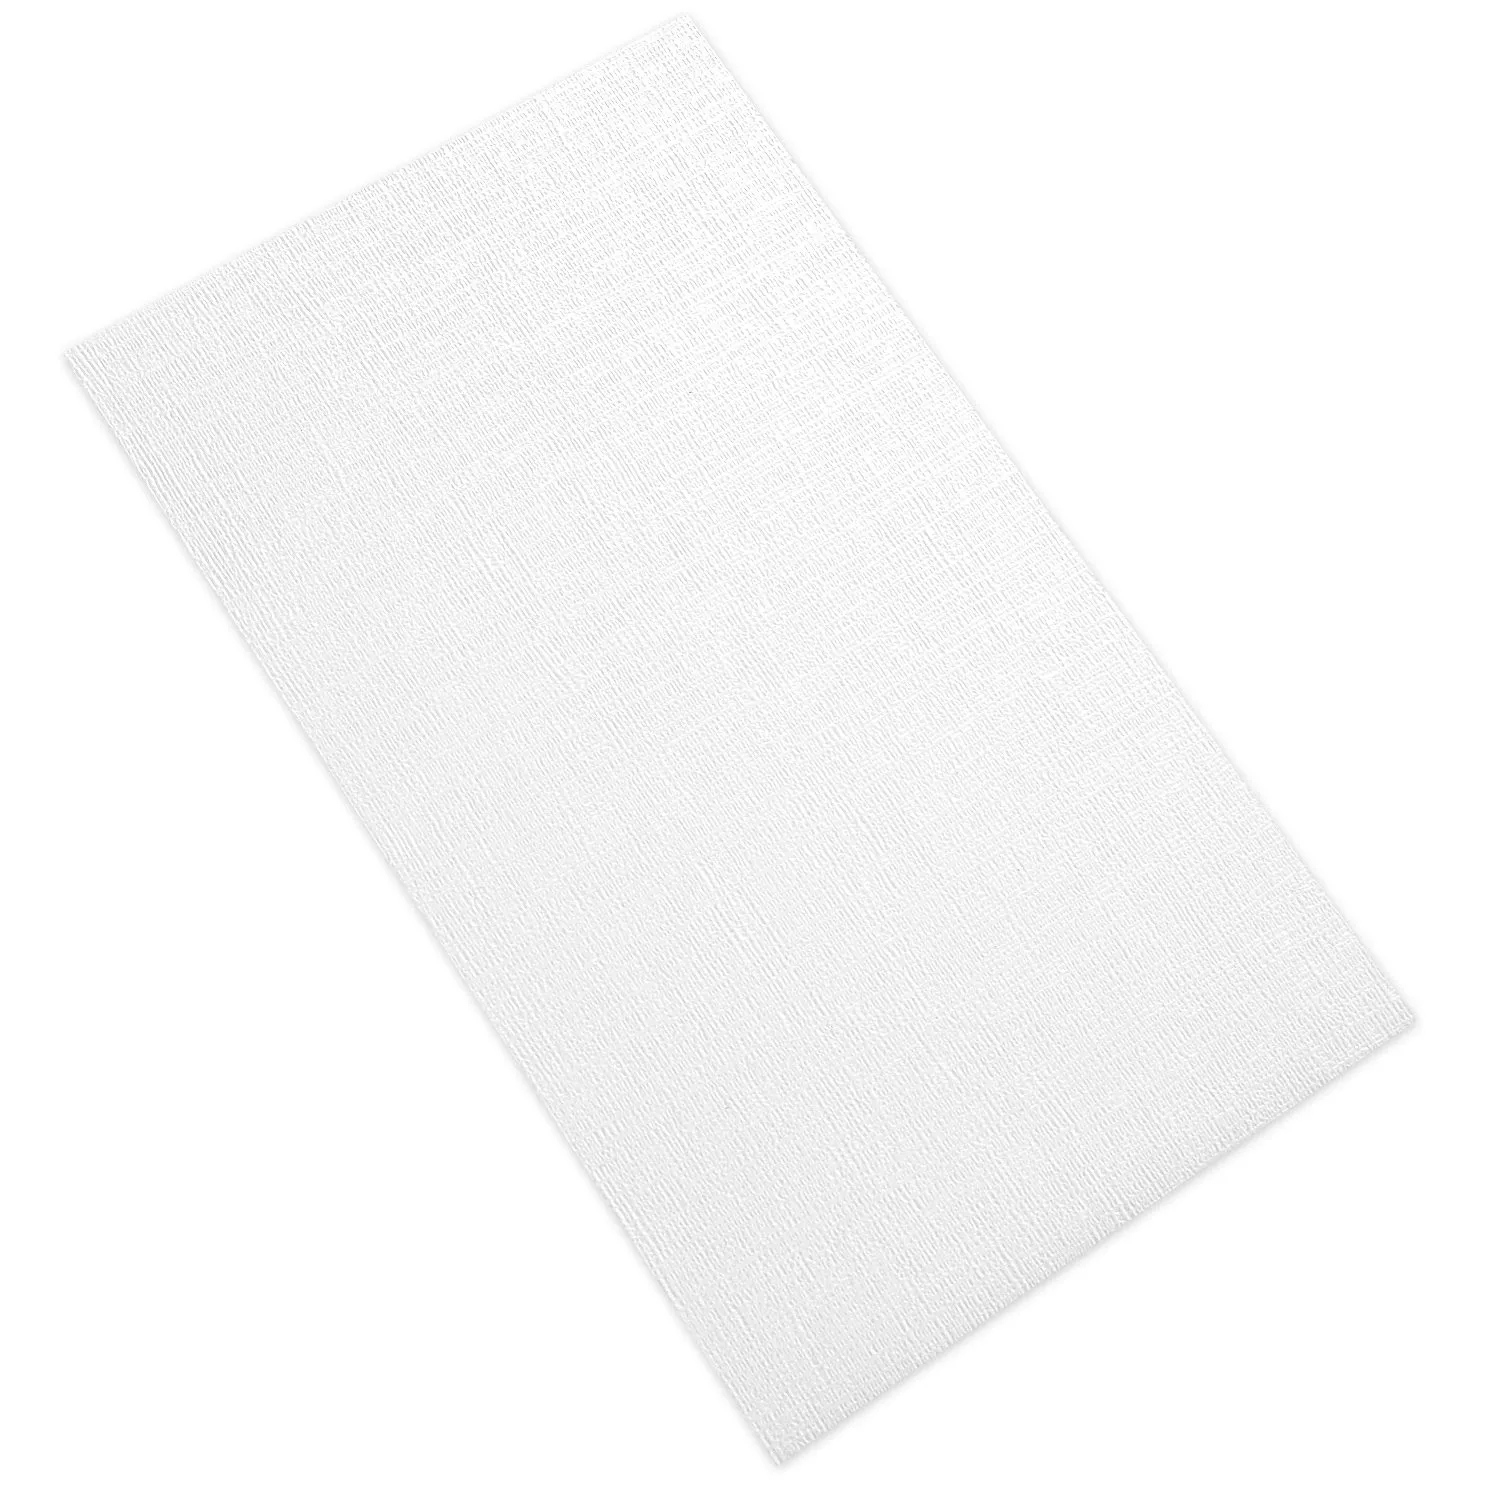 Obklady Vulcano Texture Decor White Matt 60x120cm